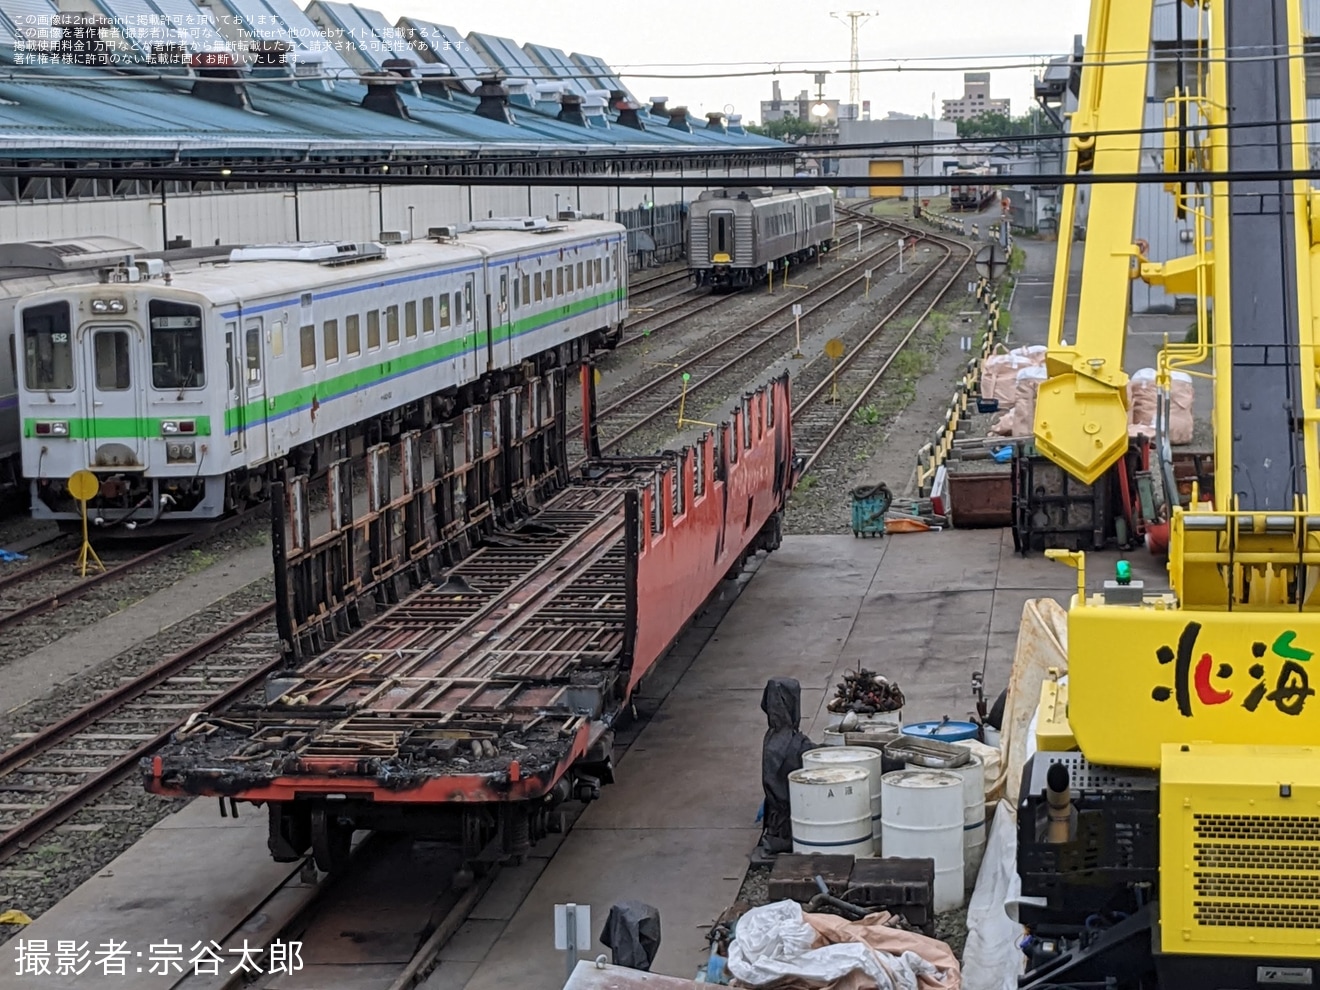 【JR北】キハ40-1758(首都圏色)が釧路運輸車両所で解体中の拡大写真